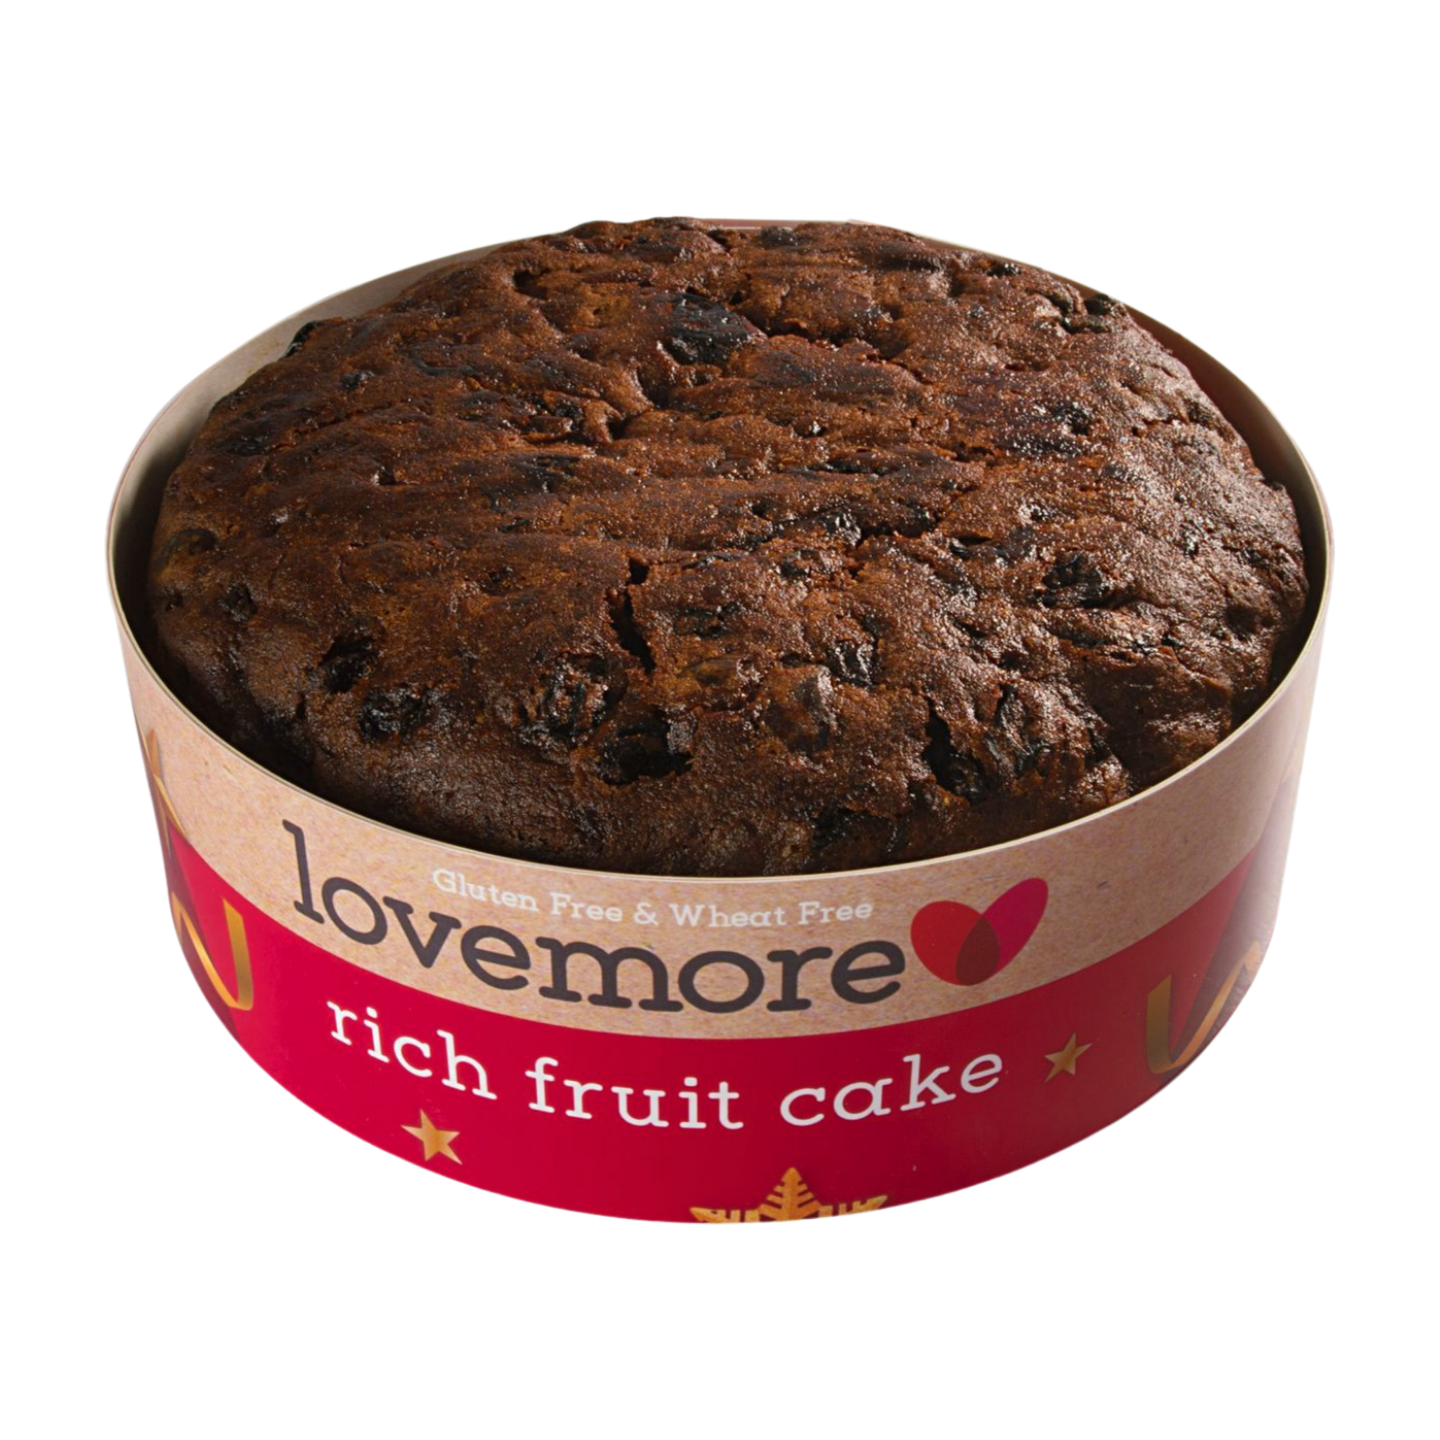 Lovemore Gluten Free Round Rich Fruit Cake (540g)